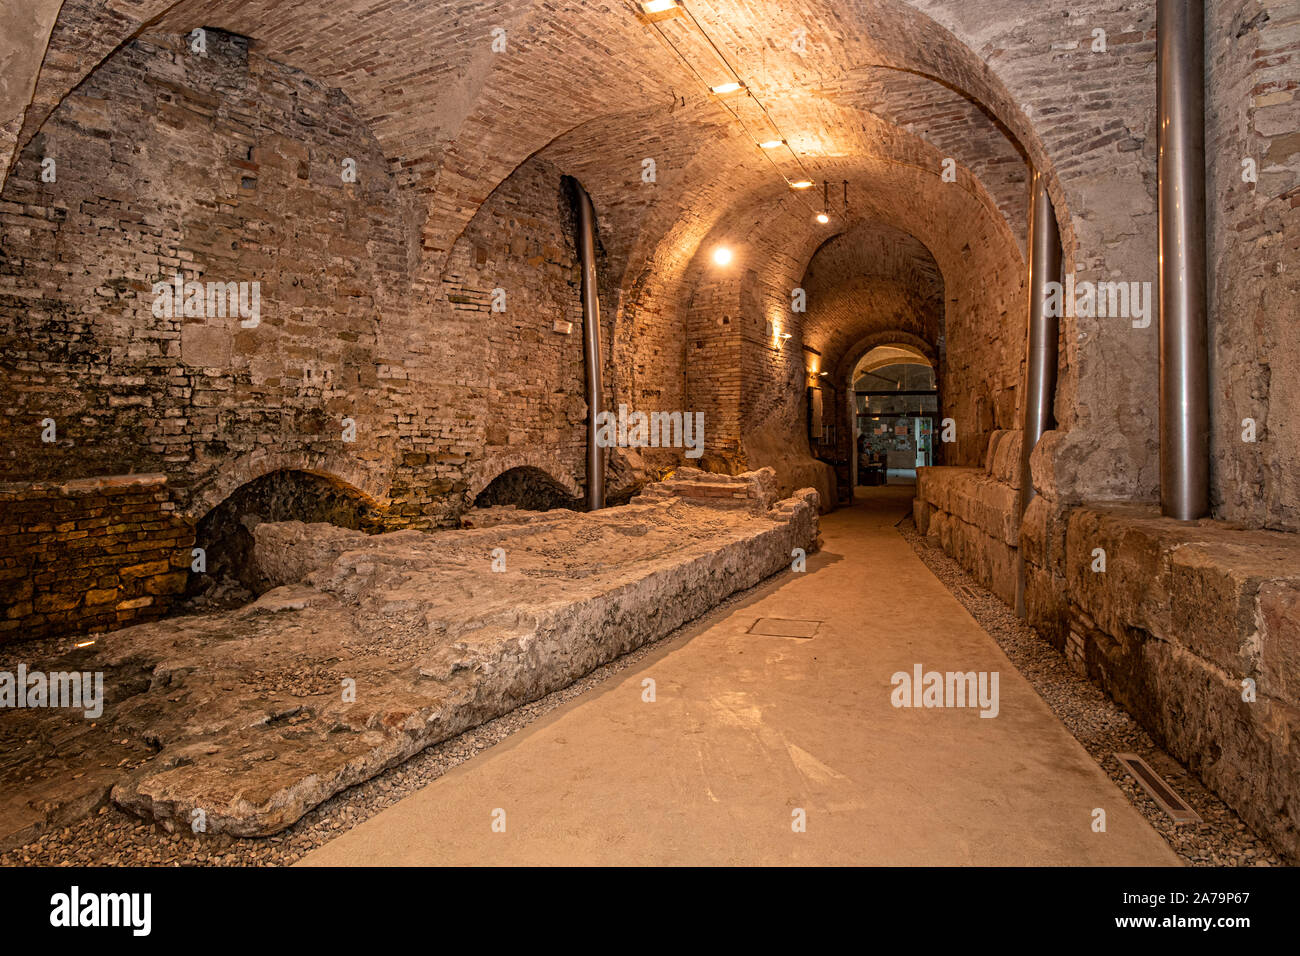 Italy Marche Osimo Grotte del Cantinone atrio con sezione mura romane |Caves of the Cantinone atrium with Roman walls section | Stock Photo